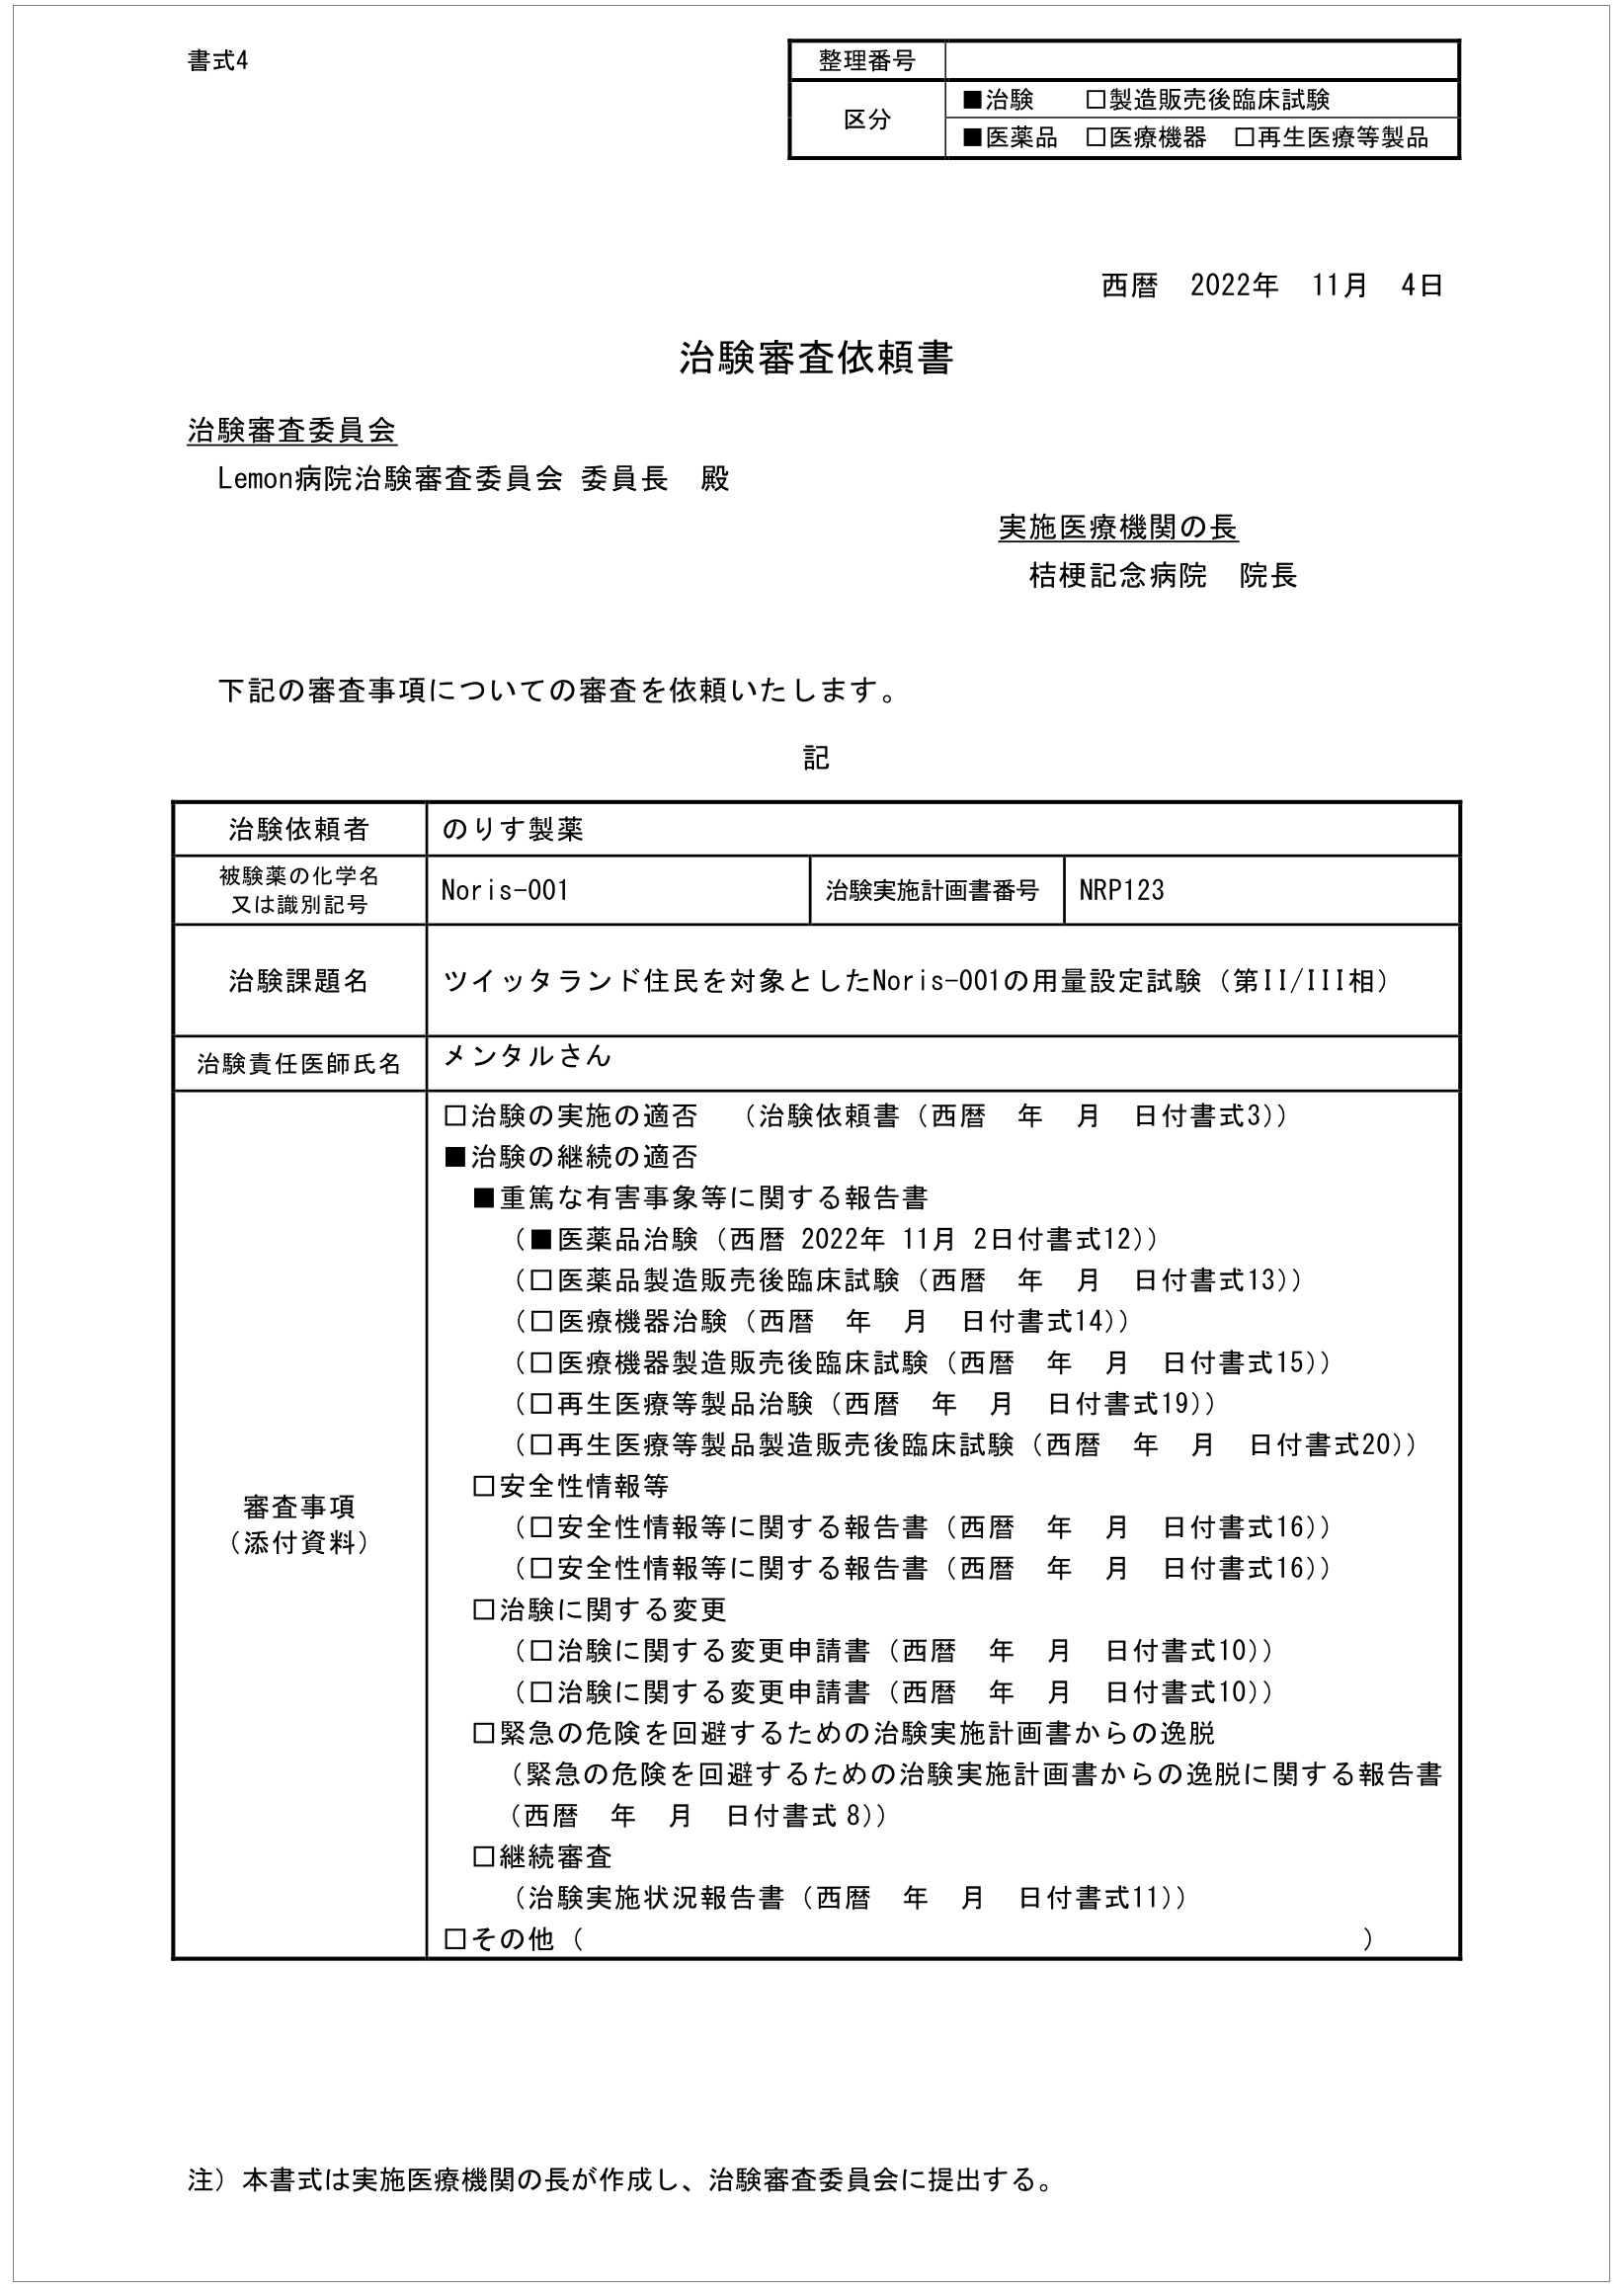 治験審査依頼書_test1